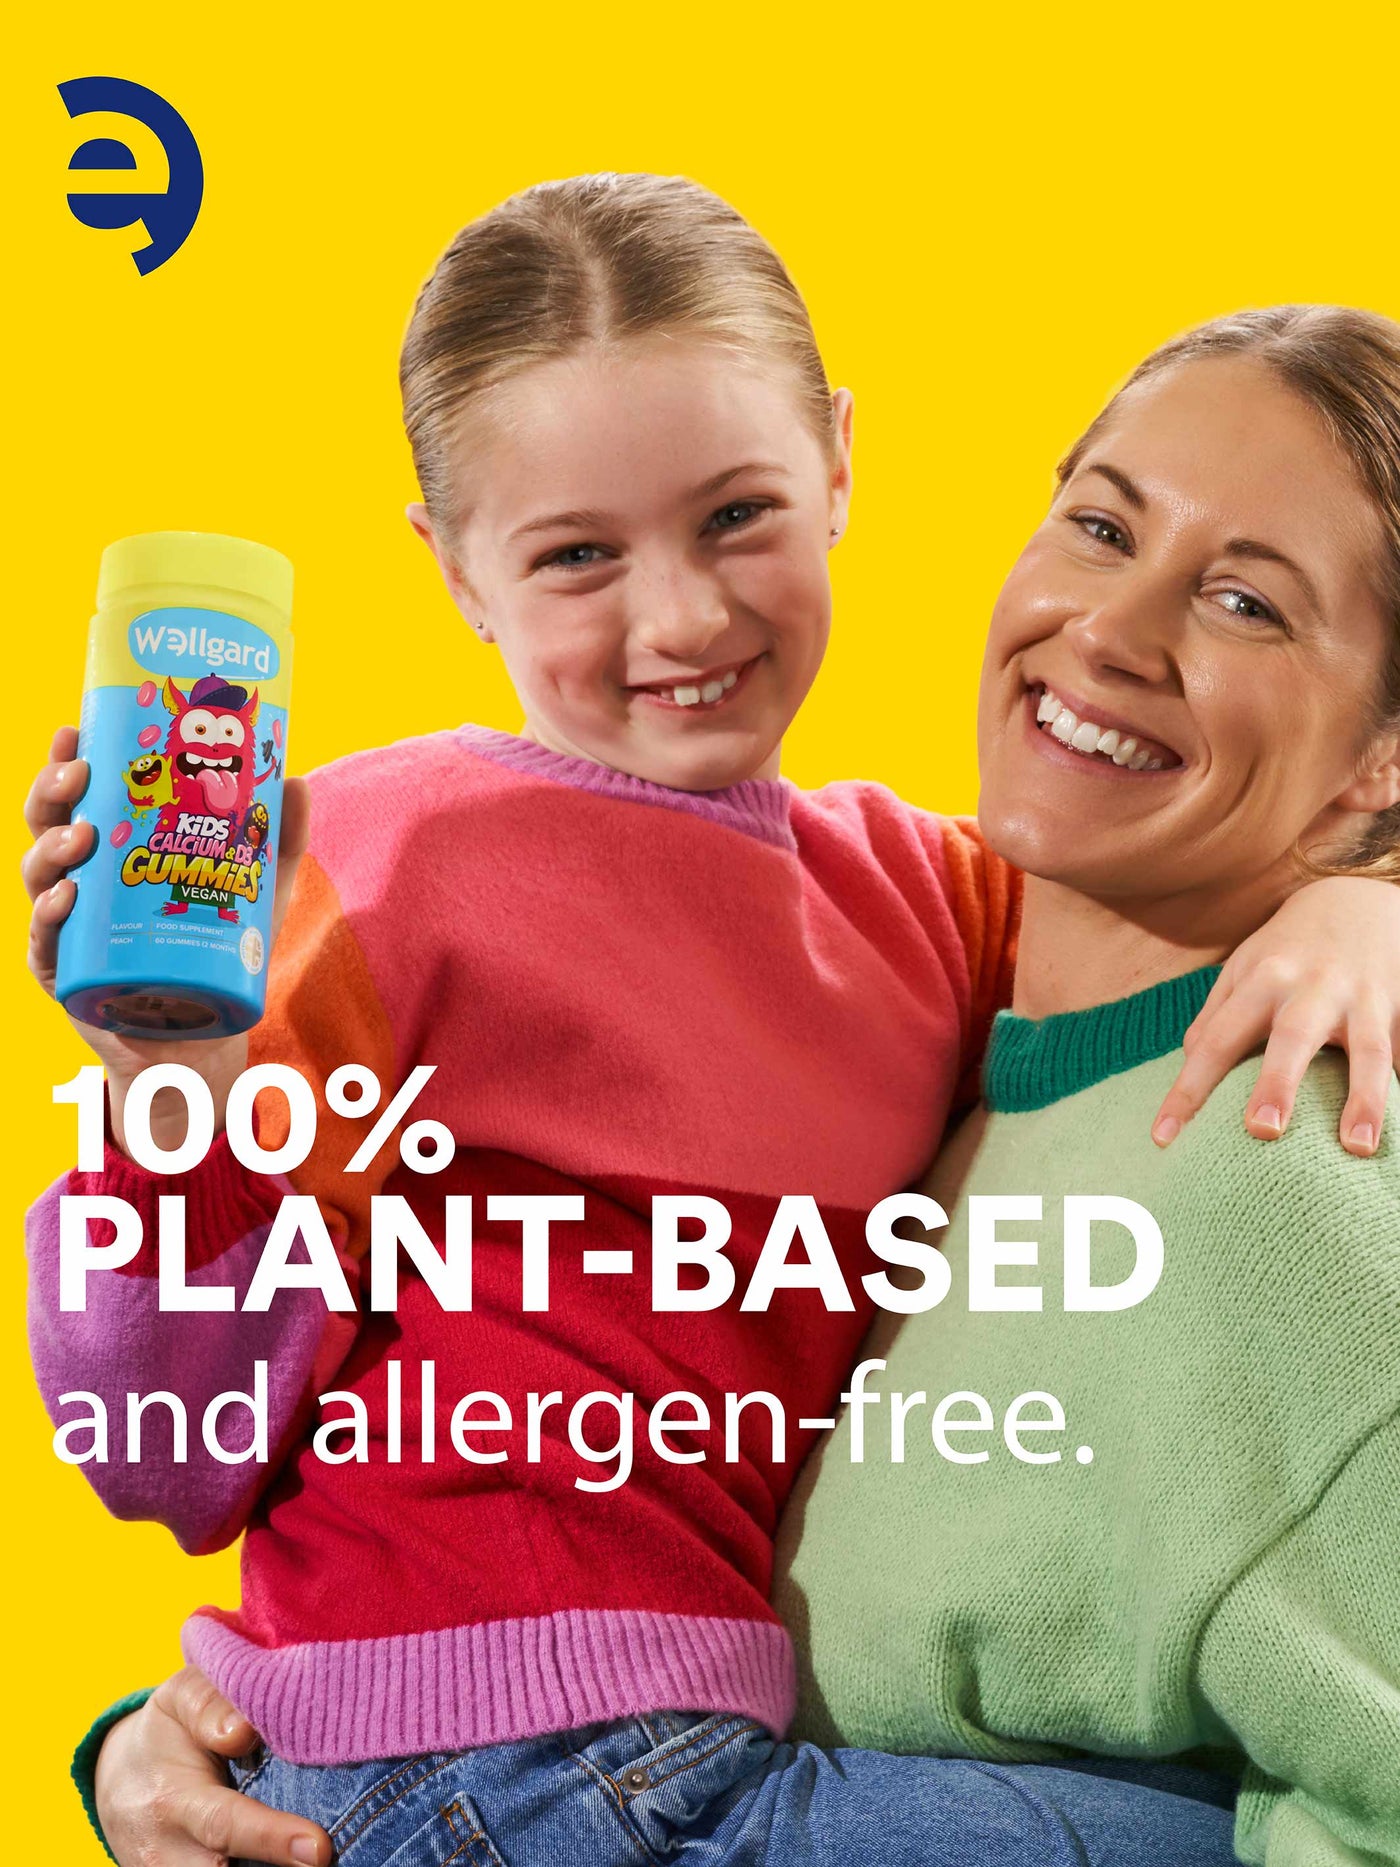 Kids Vegan Calcium & Vitamin D3 Gummies